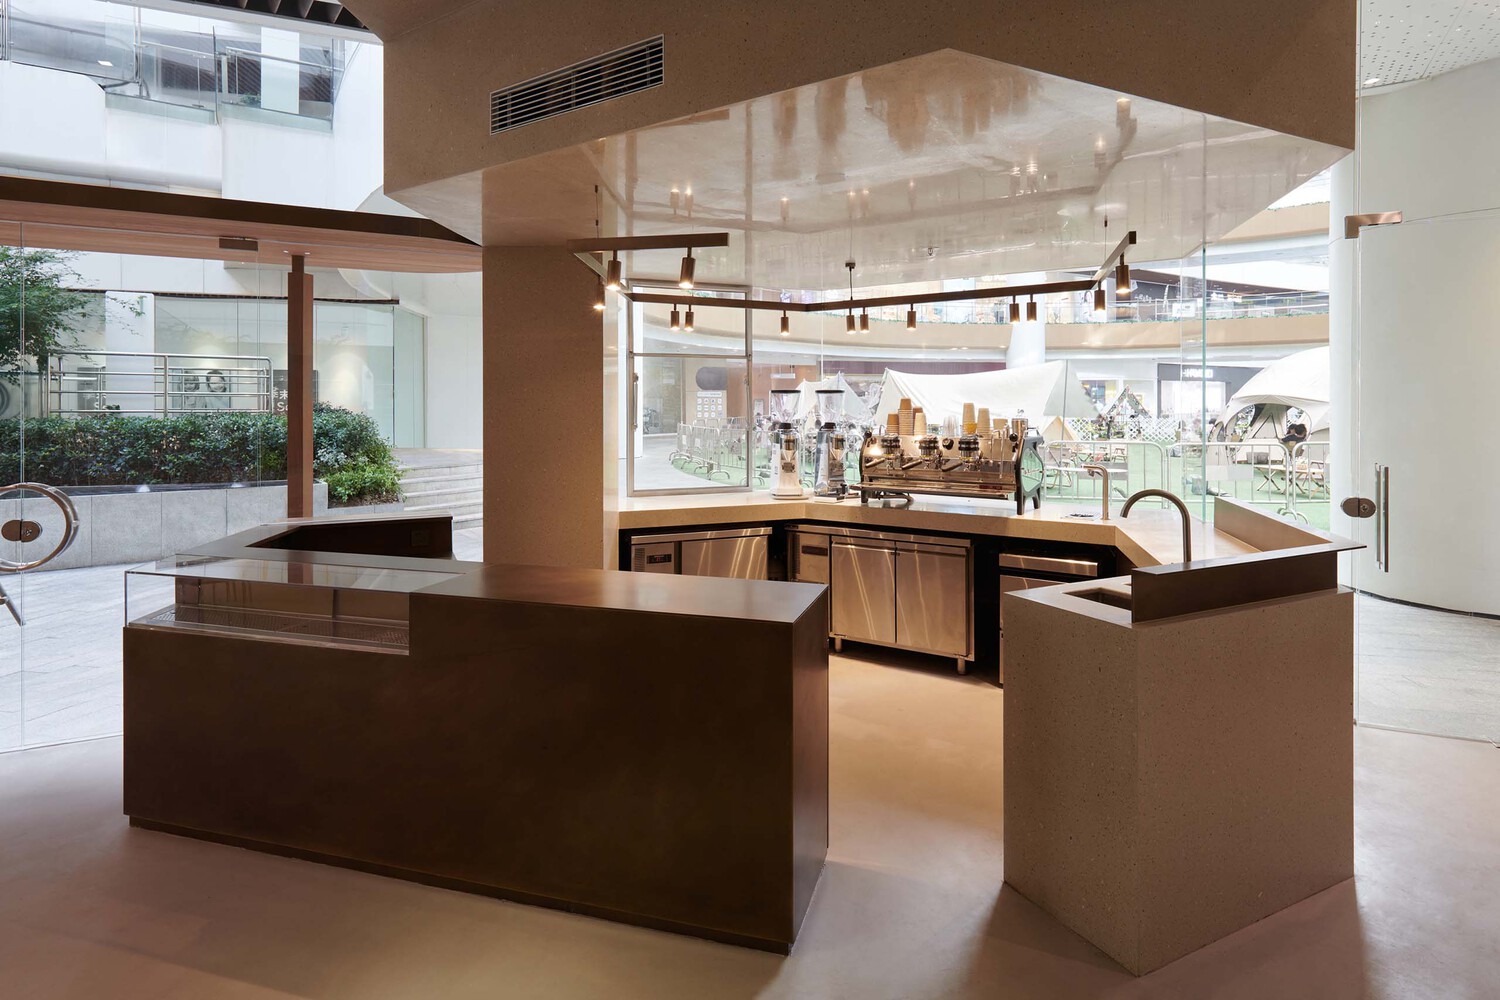 方書君工作室,上海,咖啡廳設計案例,咖啡廳裝修,the Ninth Coffee,75㎡,上海長風大悅城